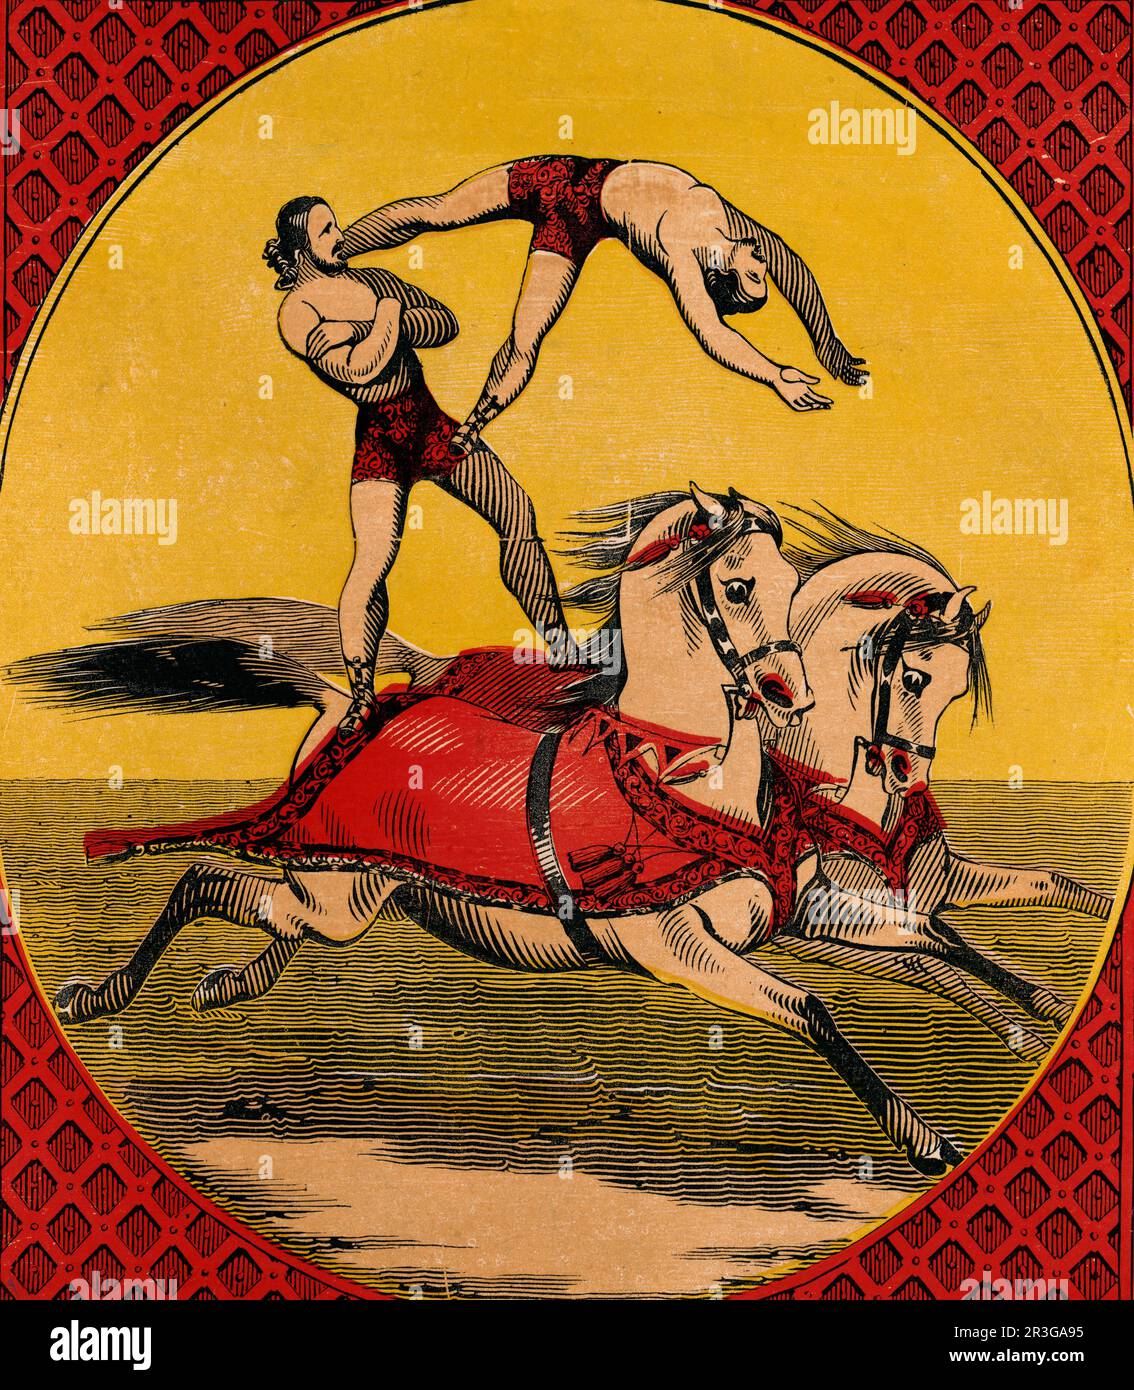 Imprimé vintage de deux hommes à dos de cheval pour des acrobaties de qualité tout en s'équilibrant sur le dos de deux chevaux. Banque D'Images